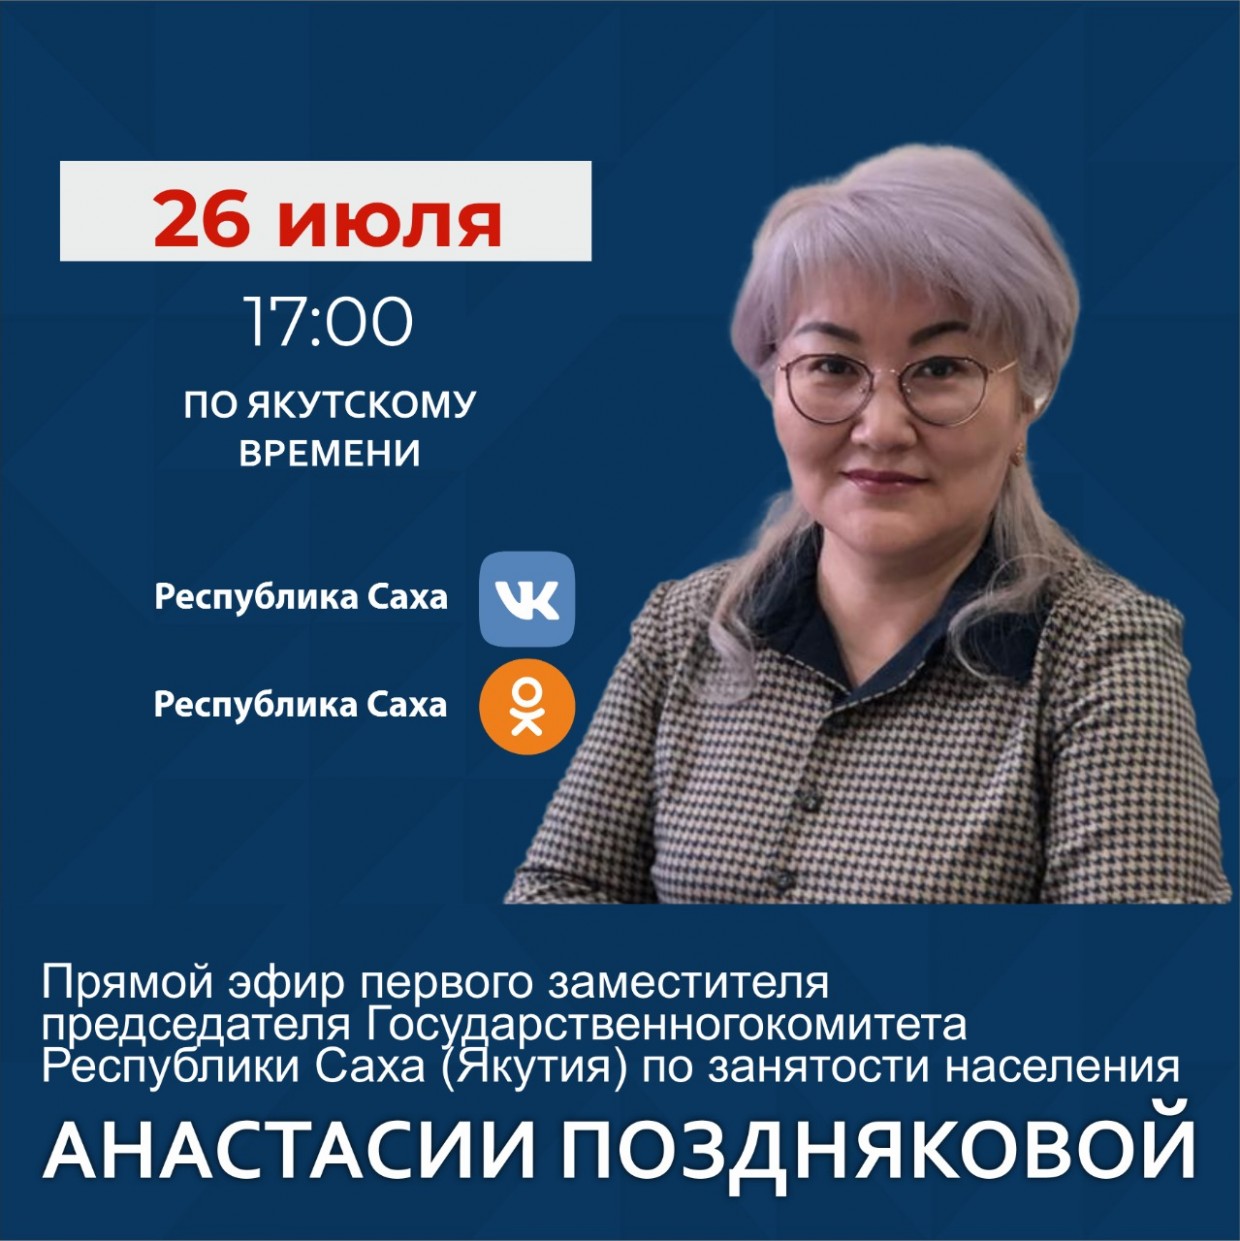 Первый зампред Госкомитета Якутии по занятости населения ответит на вопросы в прямом эфире